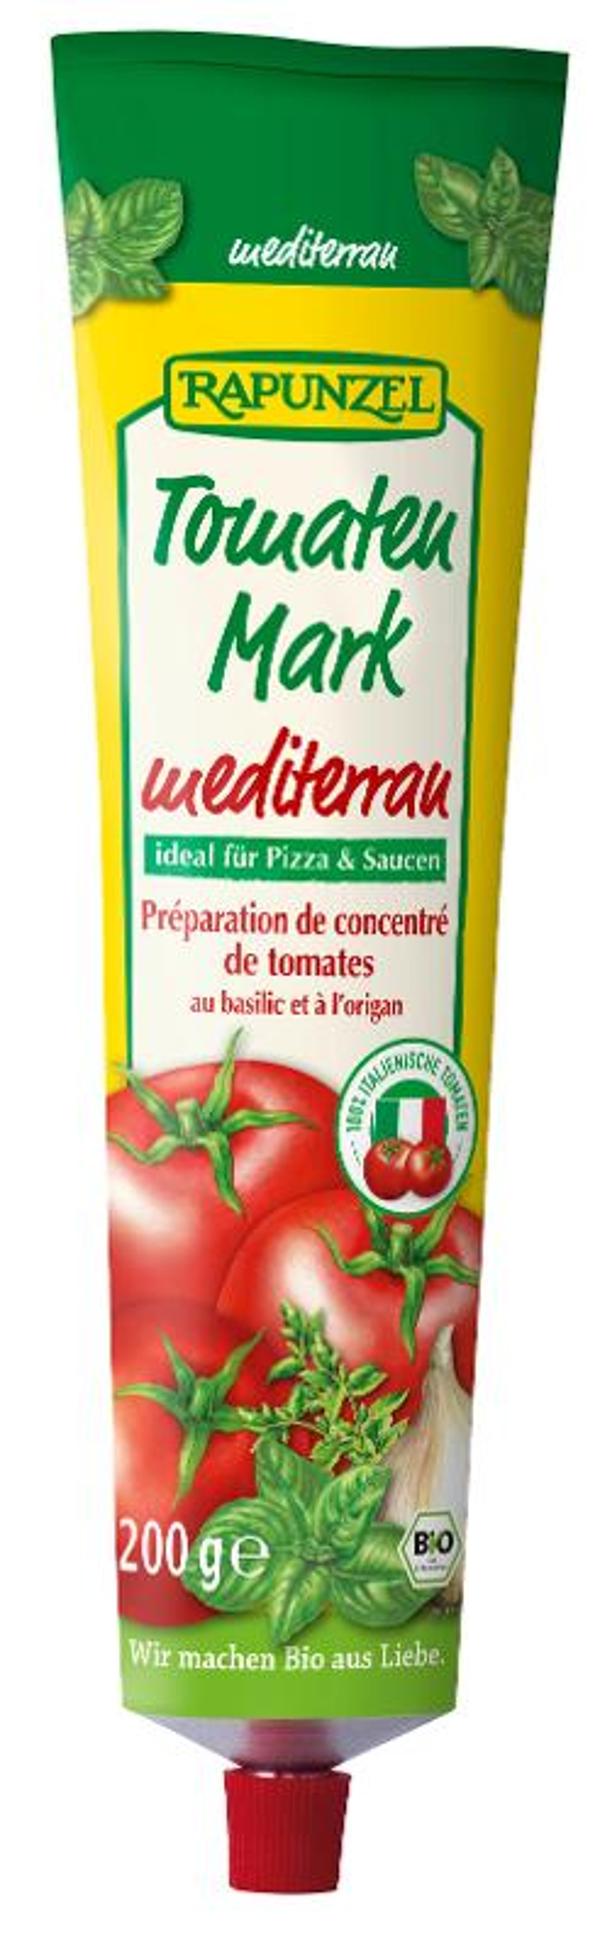 Produktfoto zu Tomatenmark mediterran in der Tube 200g Rapunzel